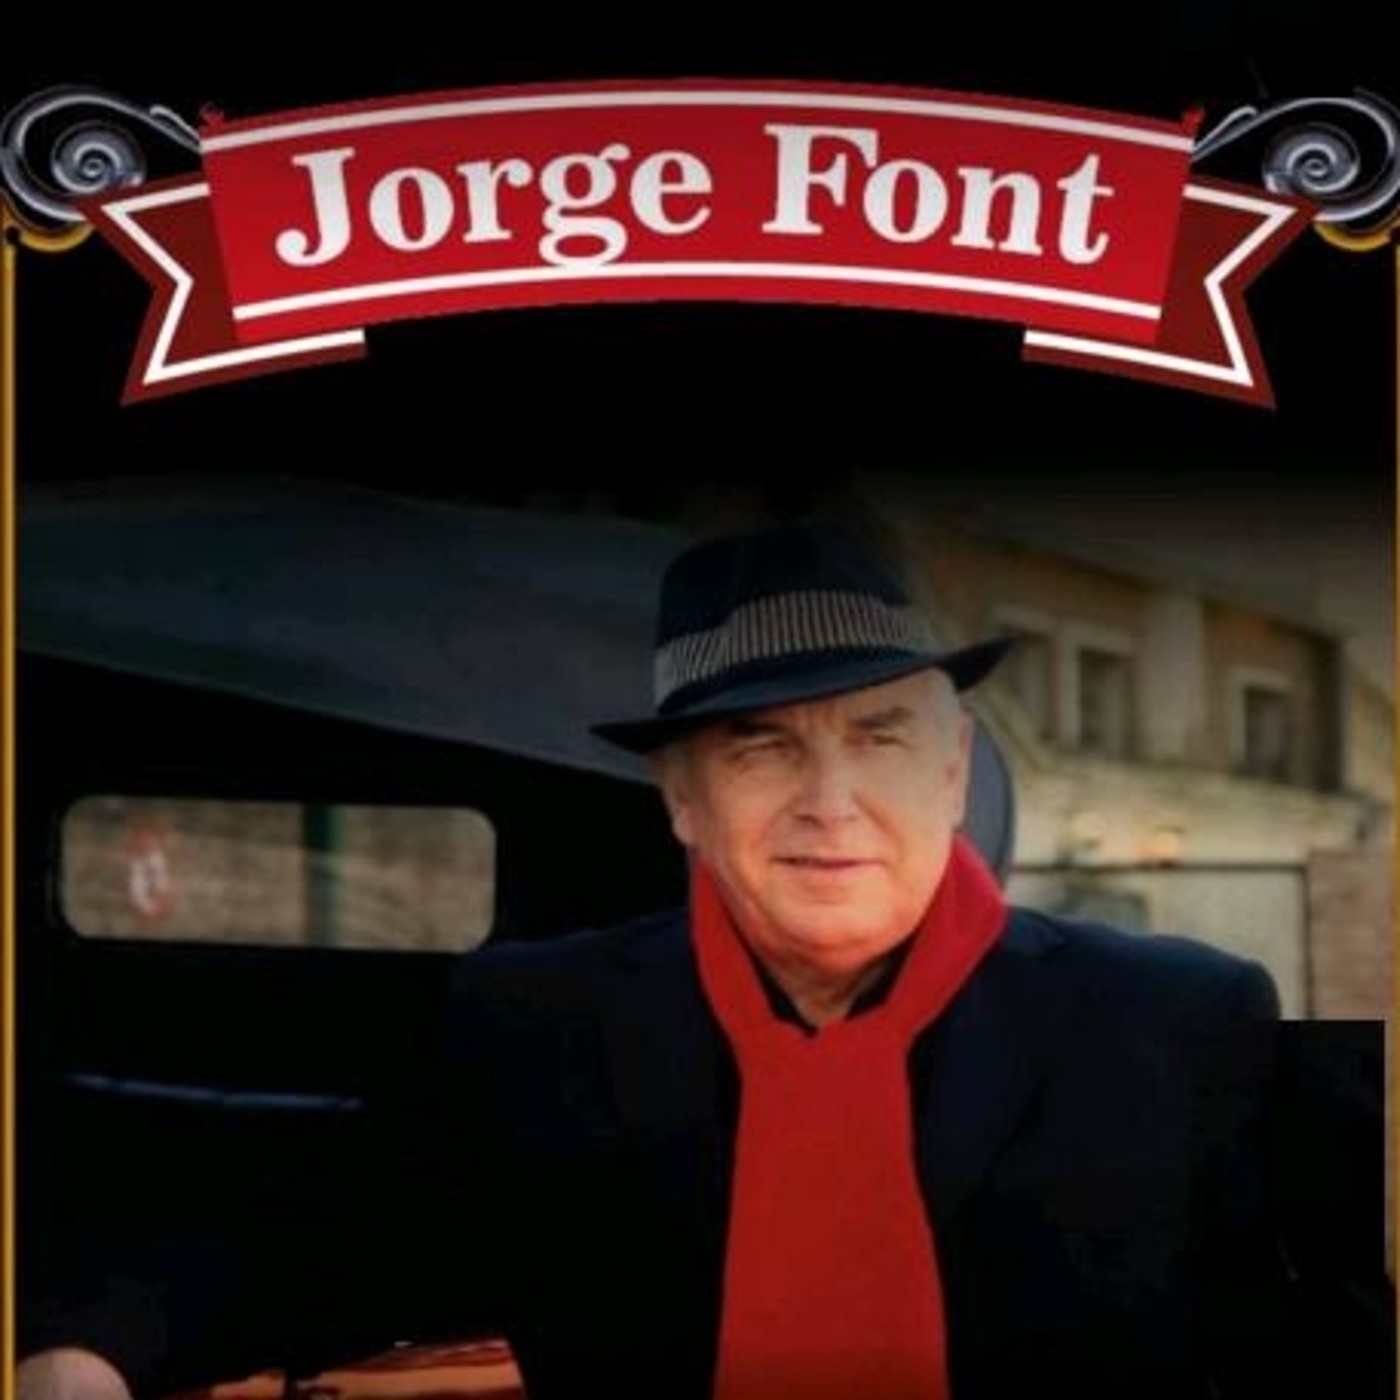 Jorge Font